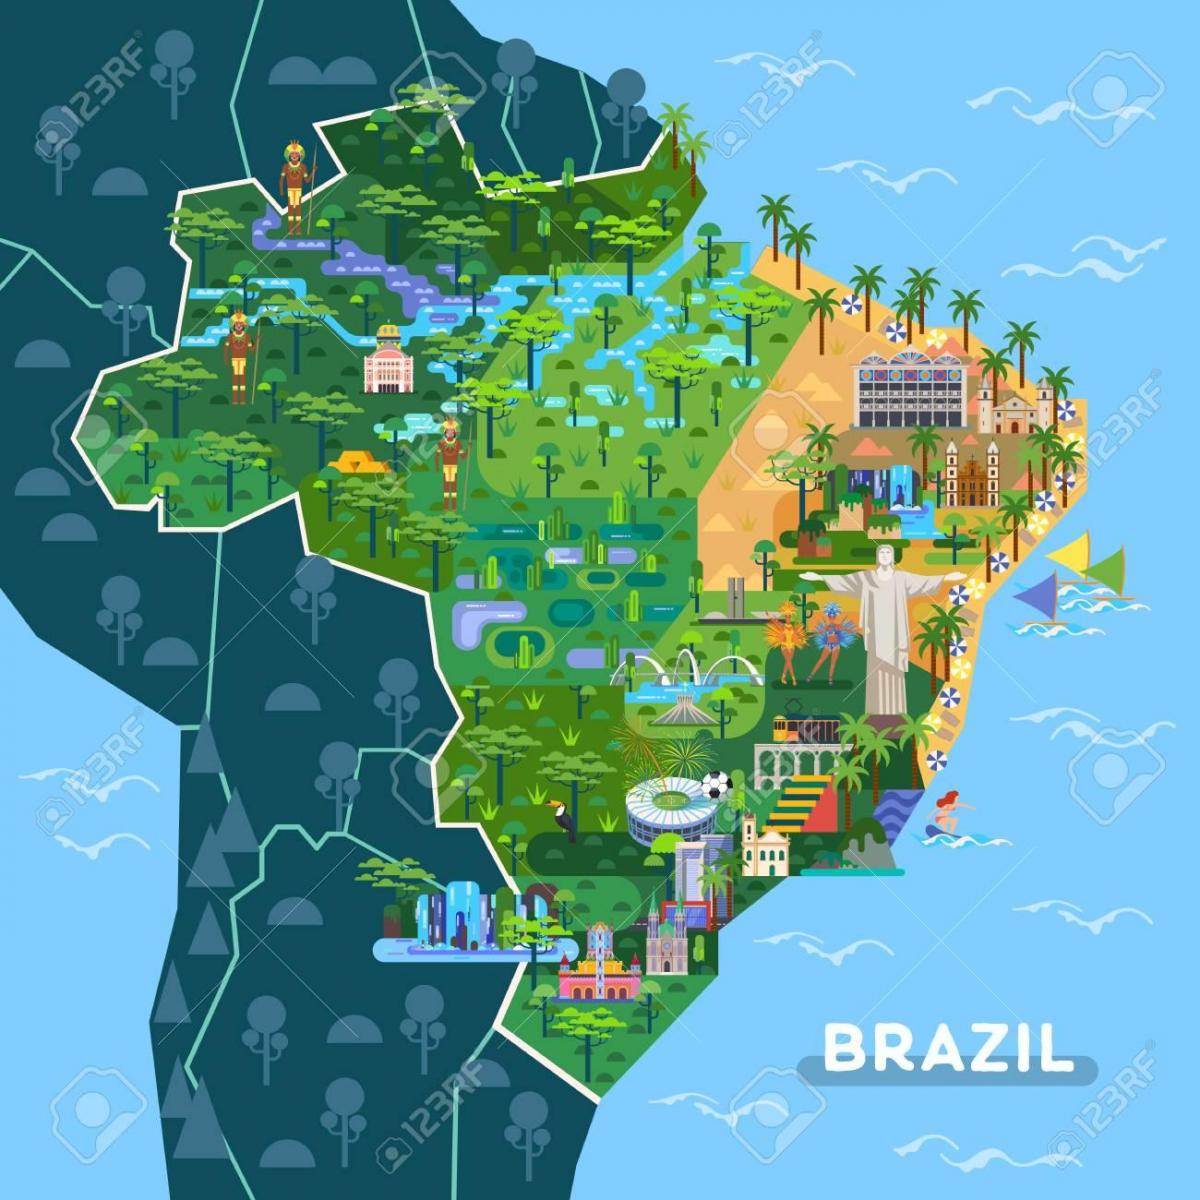 Carte des attractions touristiques du Brésil